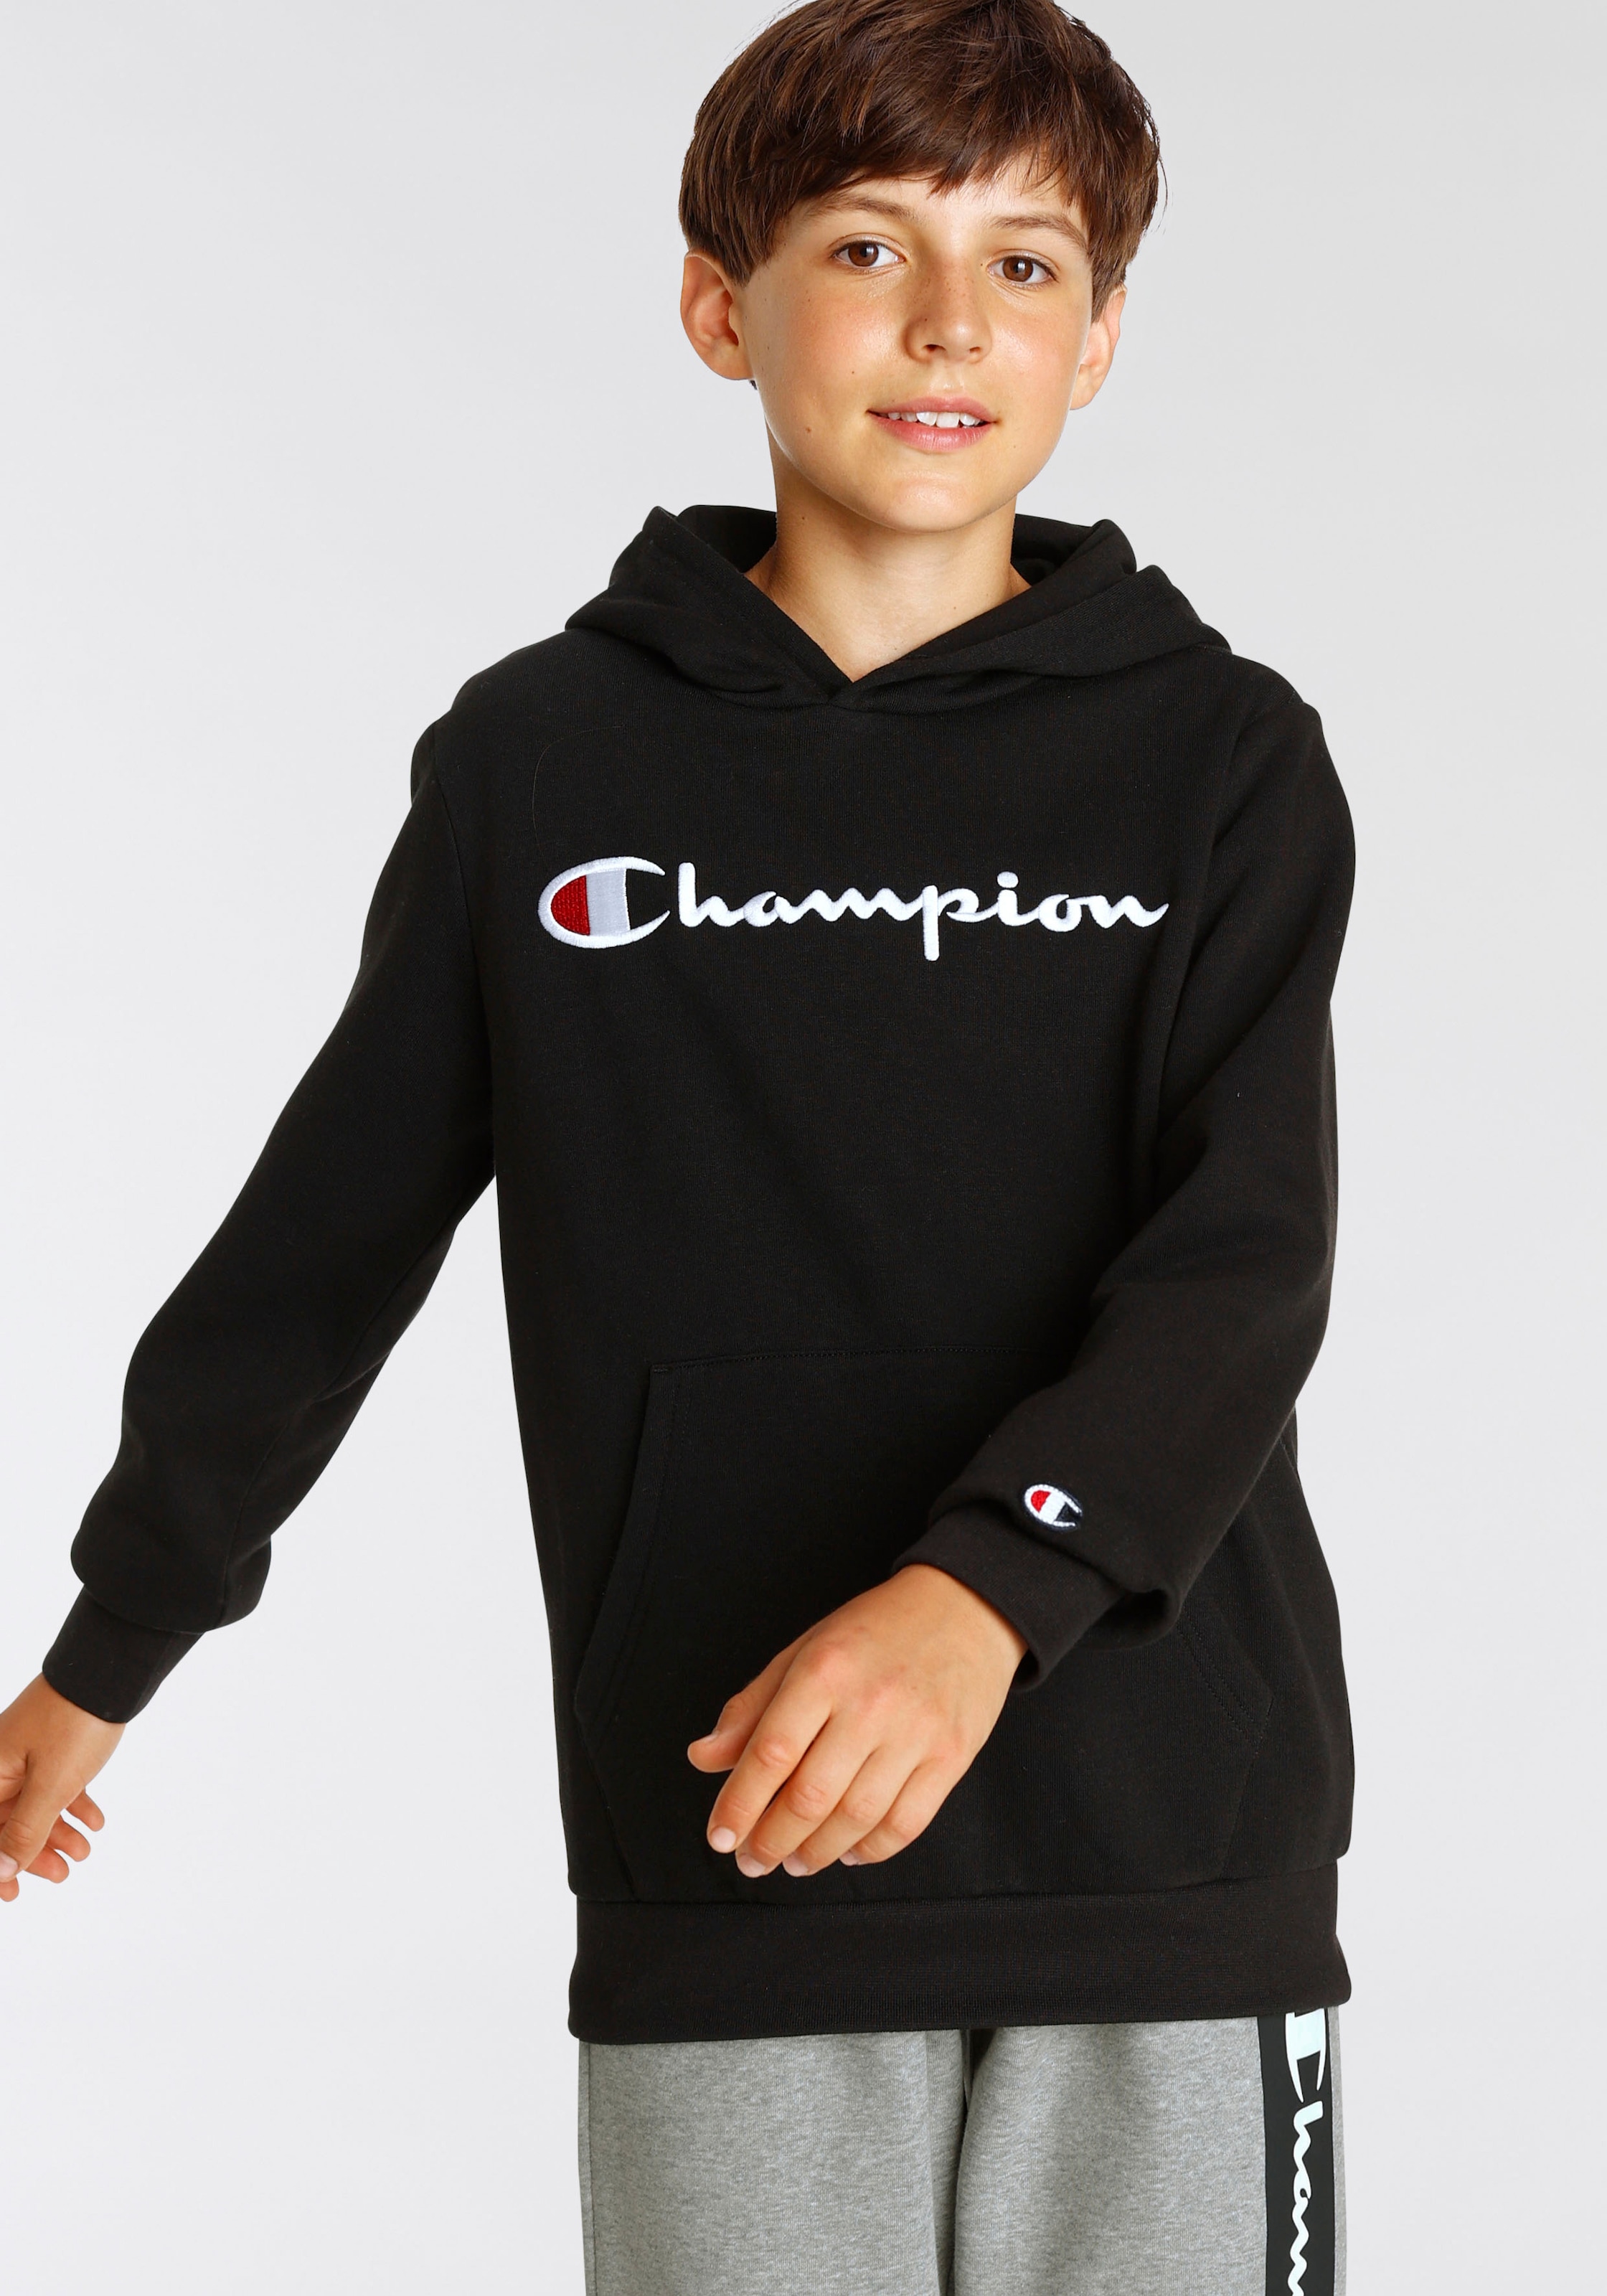 Finde Champion Sweatshirt »Classic - Sweatshirt Logo auf Kinder« large für Hooded